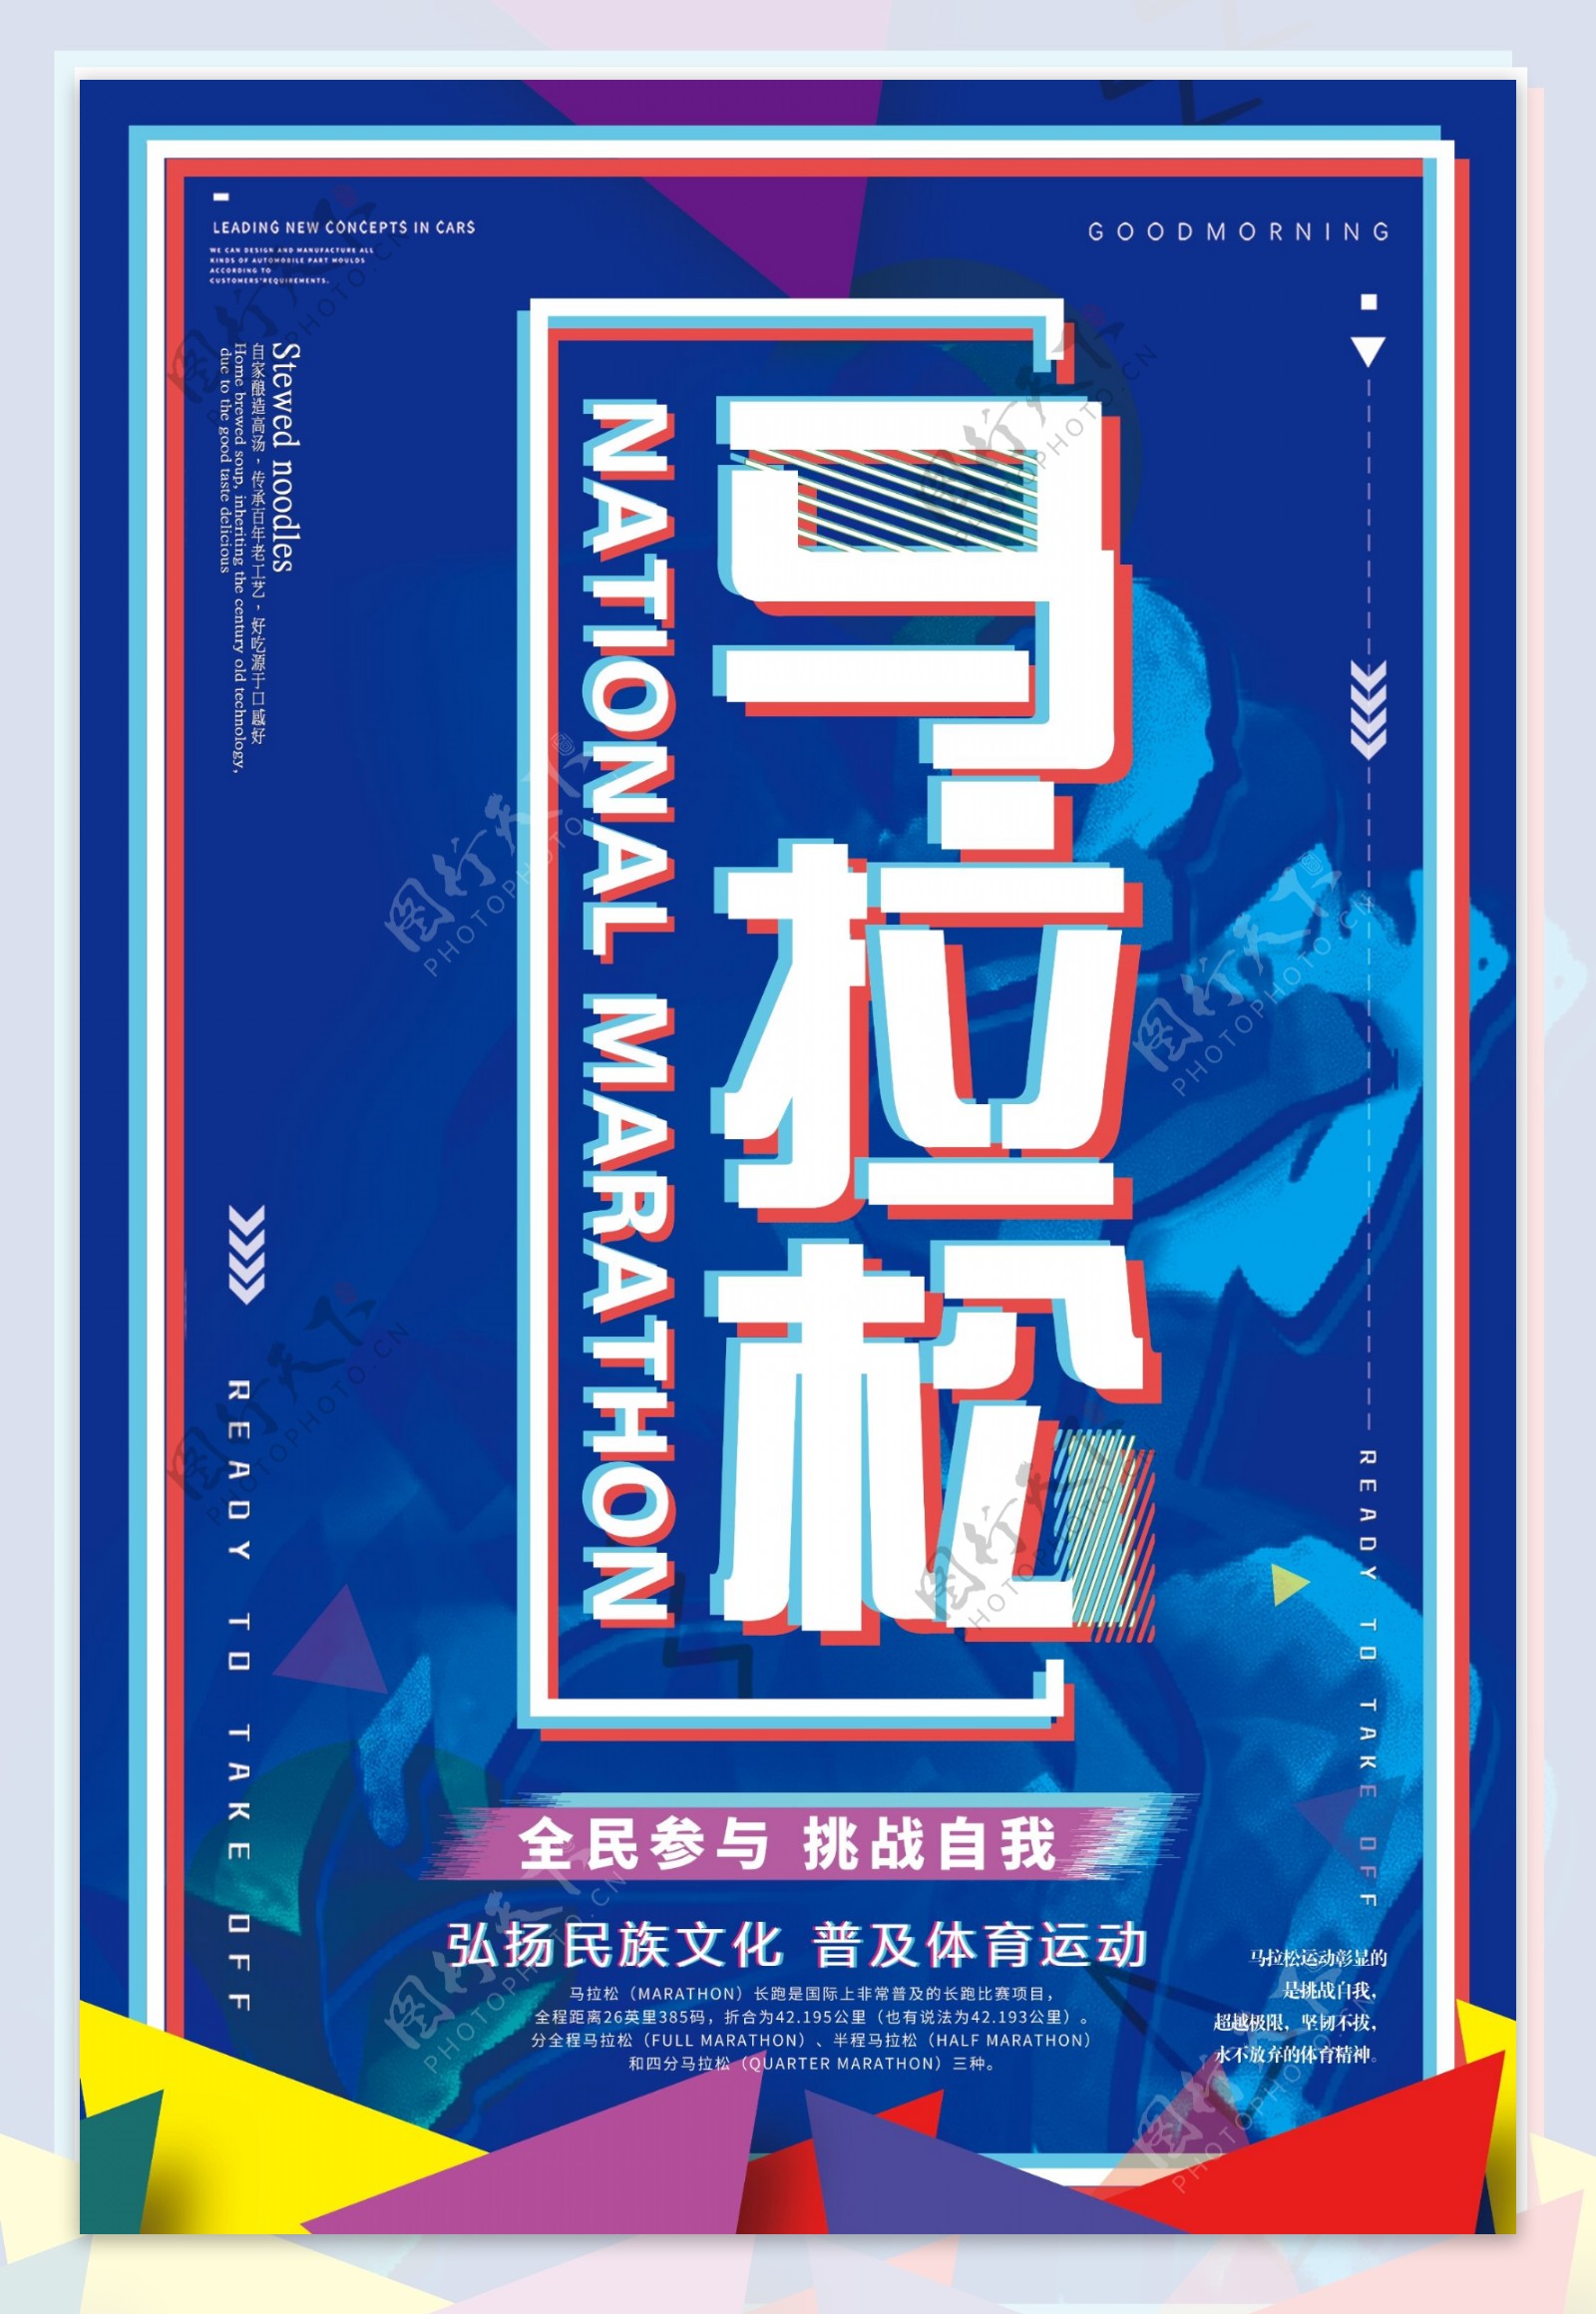 2018年蓝色抖音风马拉松运动海报